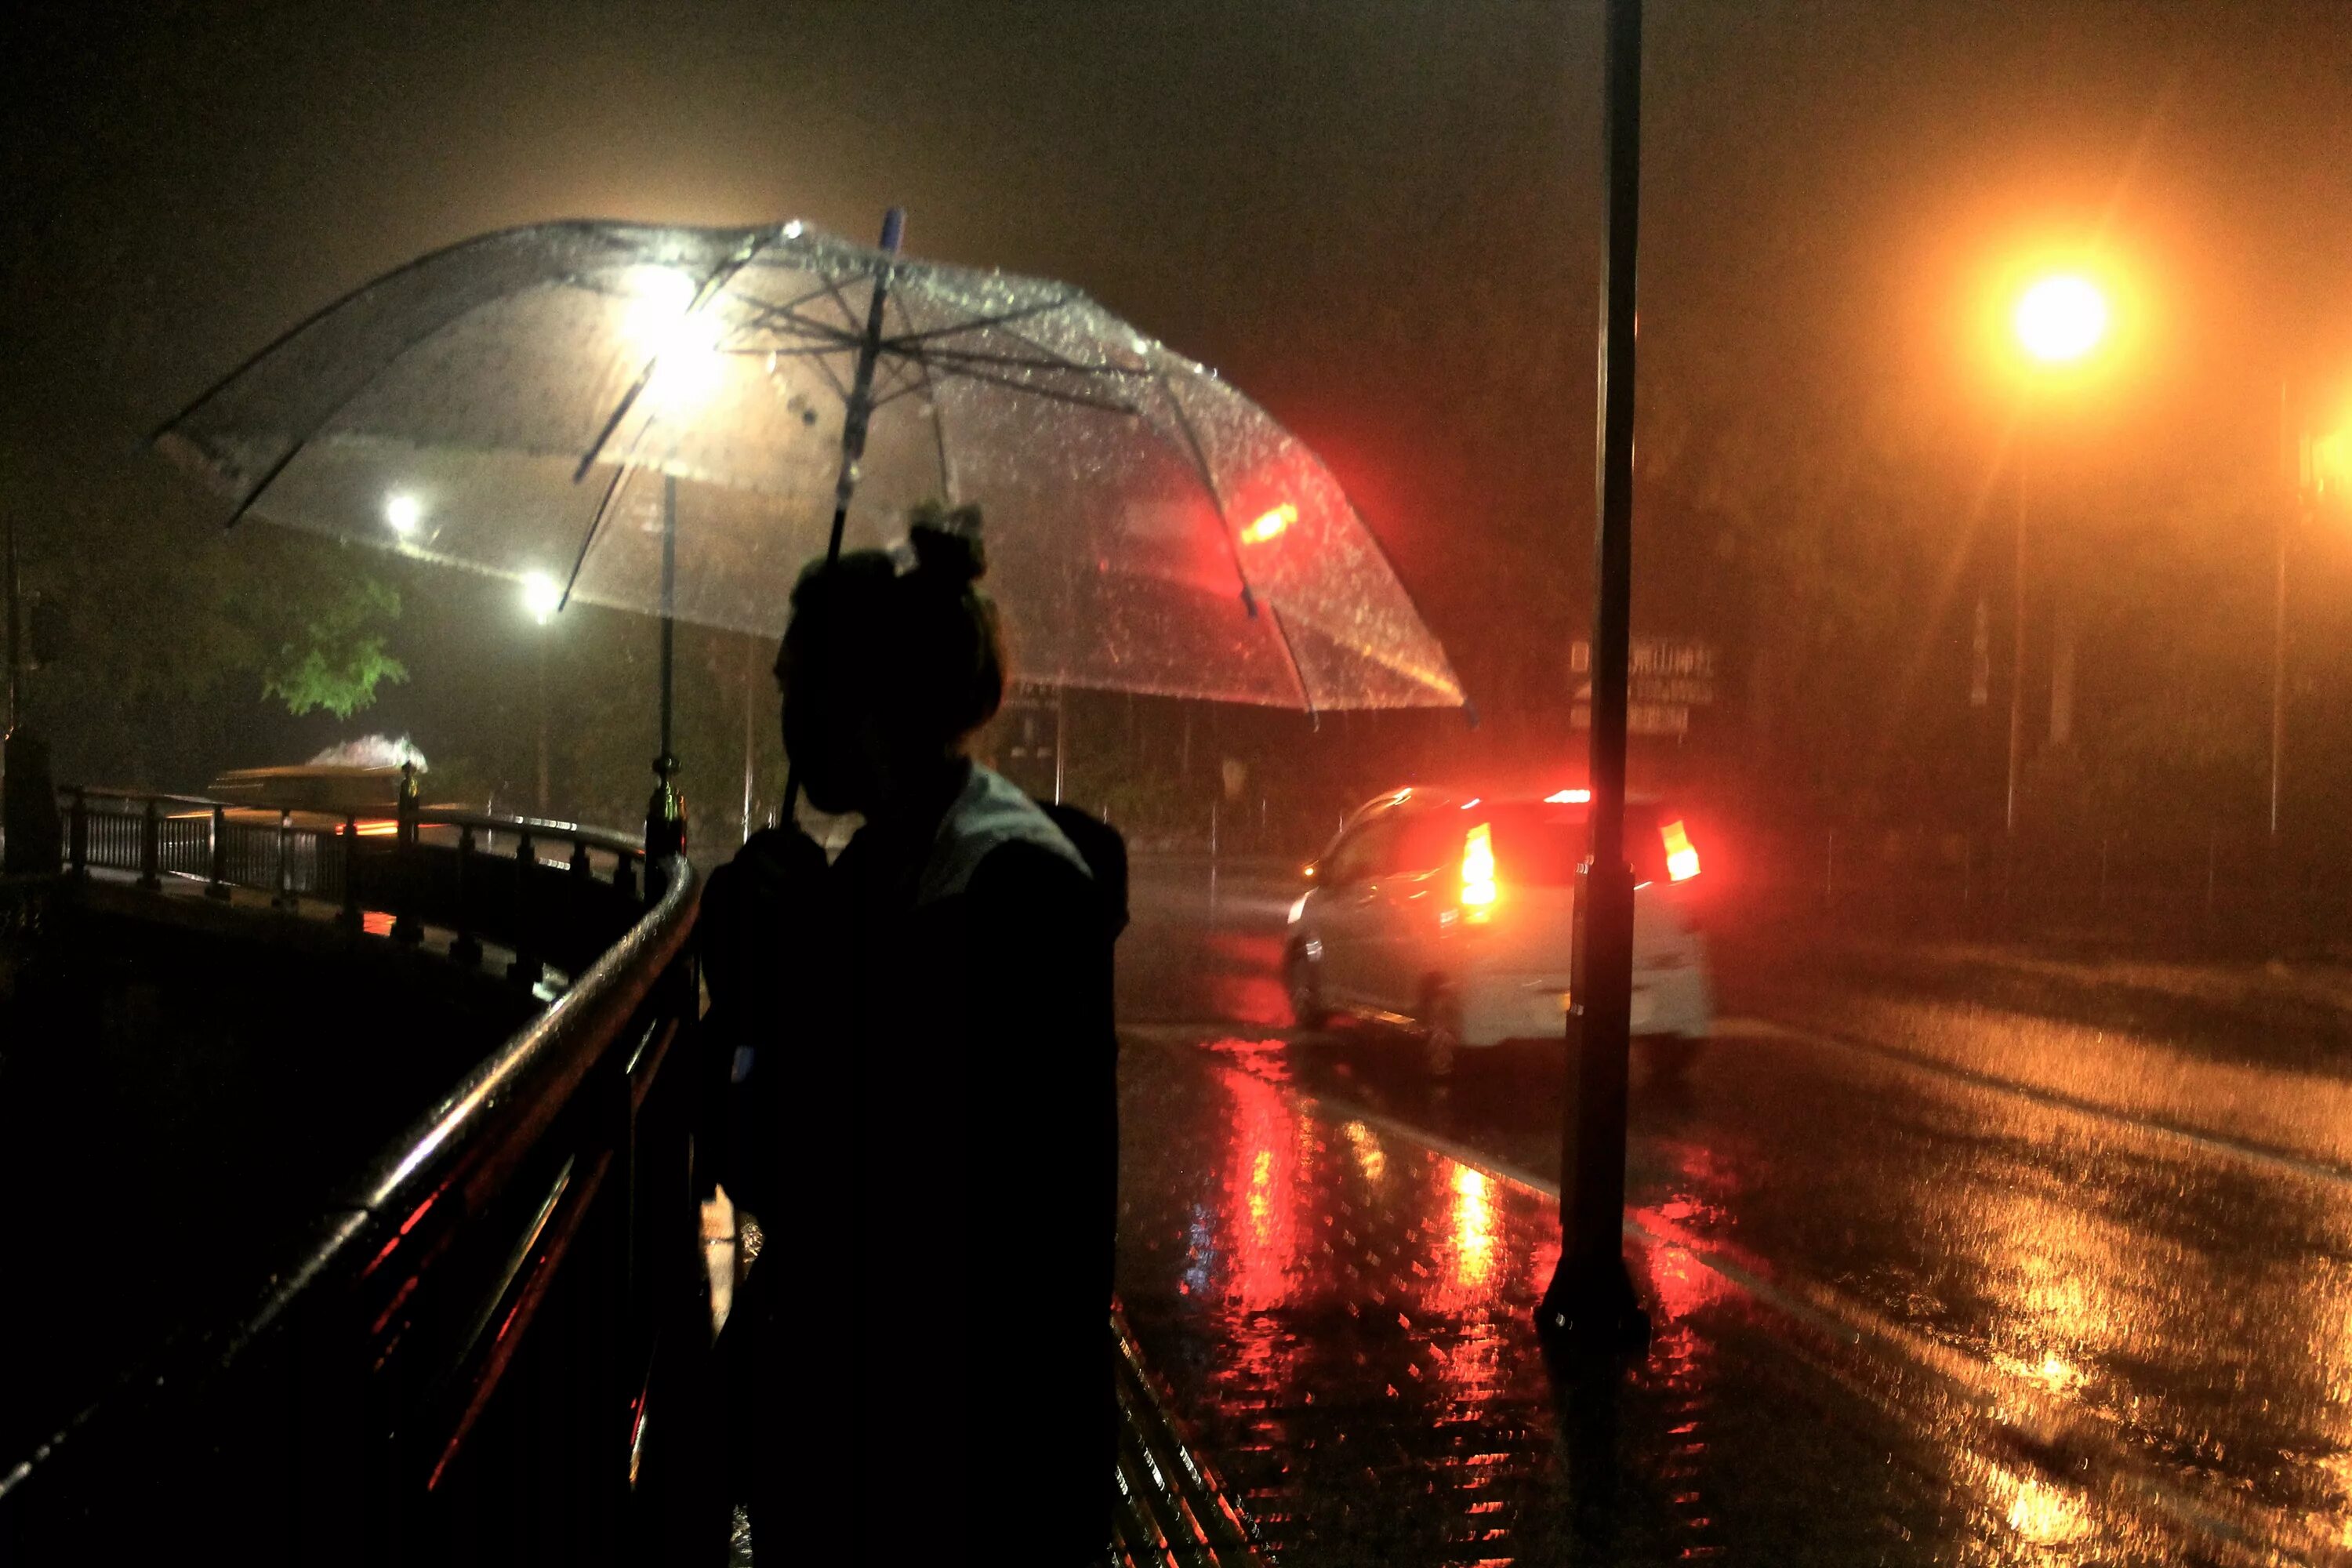 Дождь ночью. Человек под зонтом. Город ночью под дождем. "Дождливый вечер".